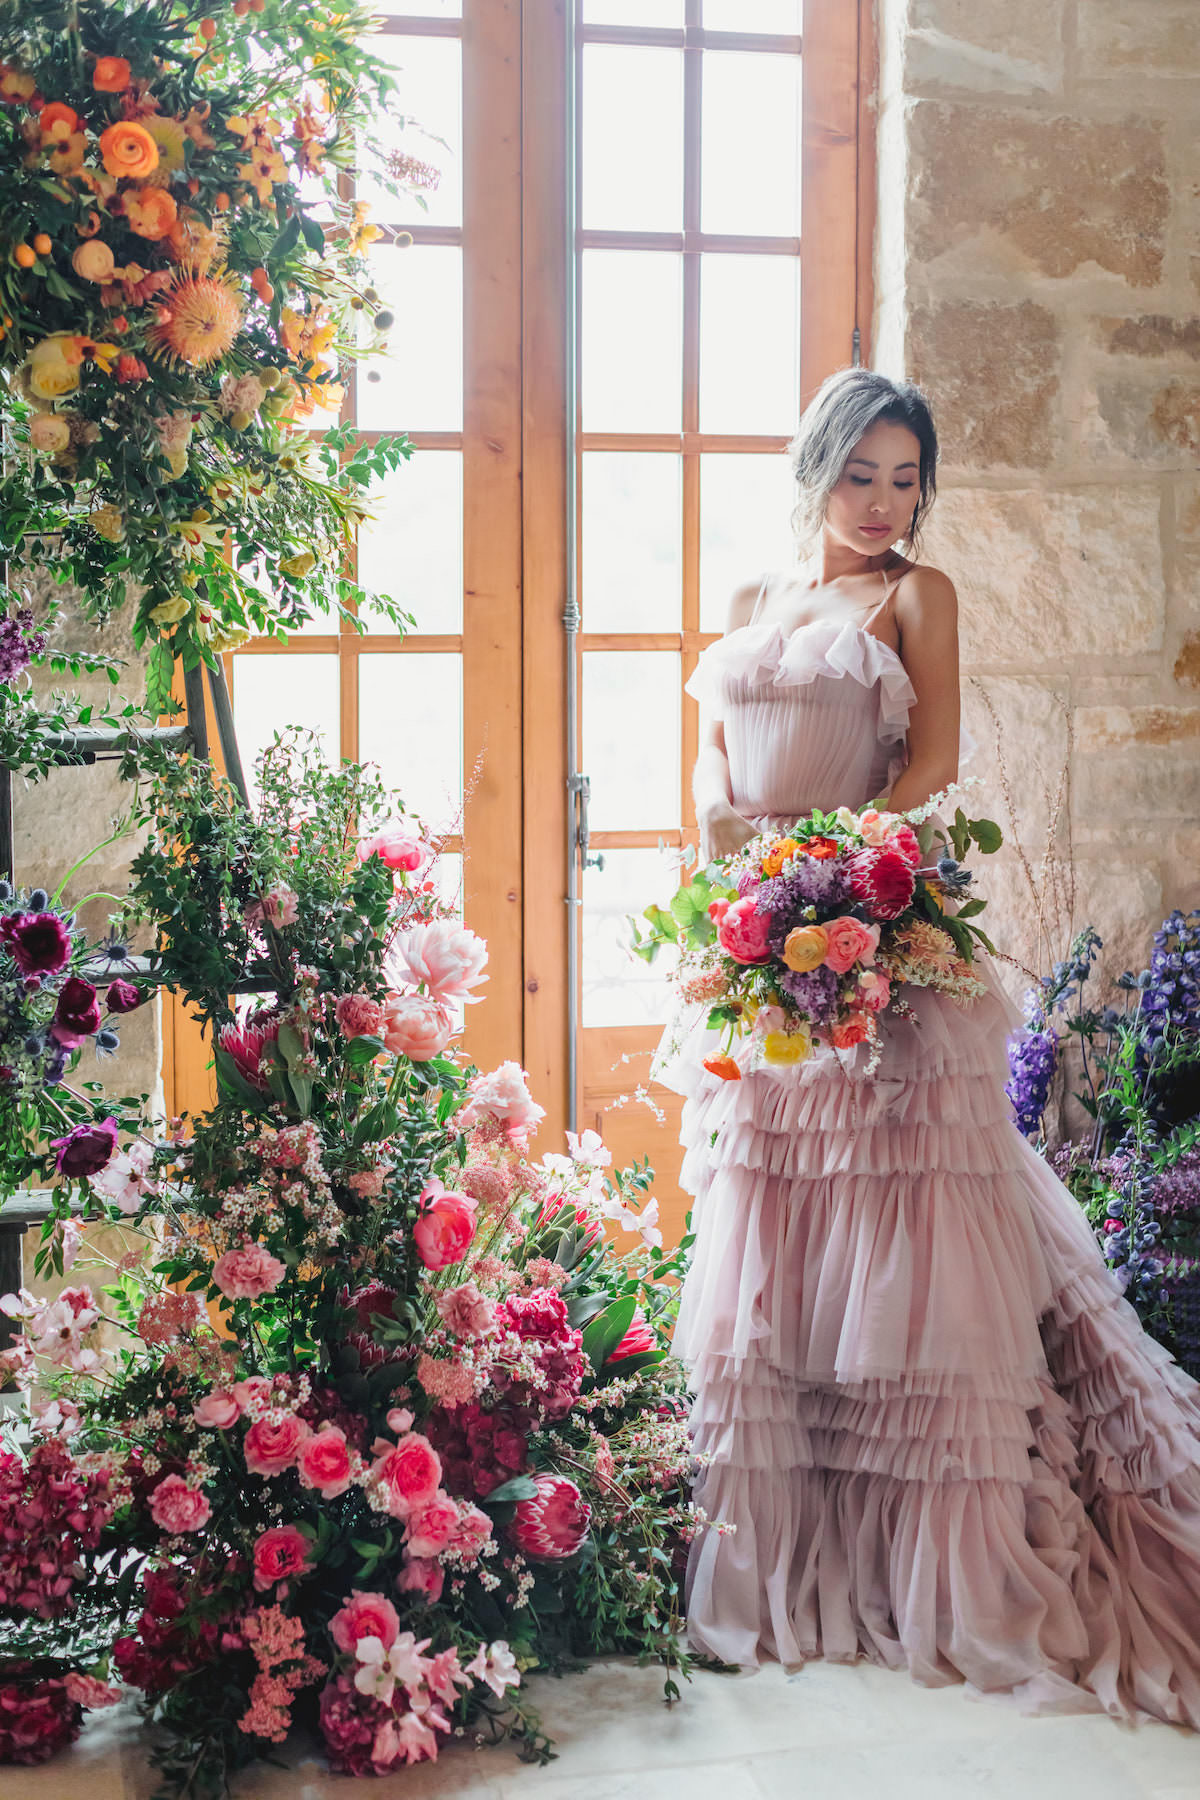 Colorful hispanic wedding - Jennifer Cortiella Photography